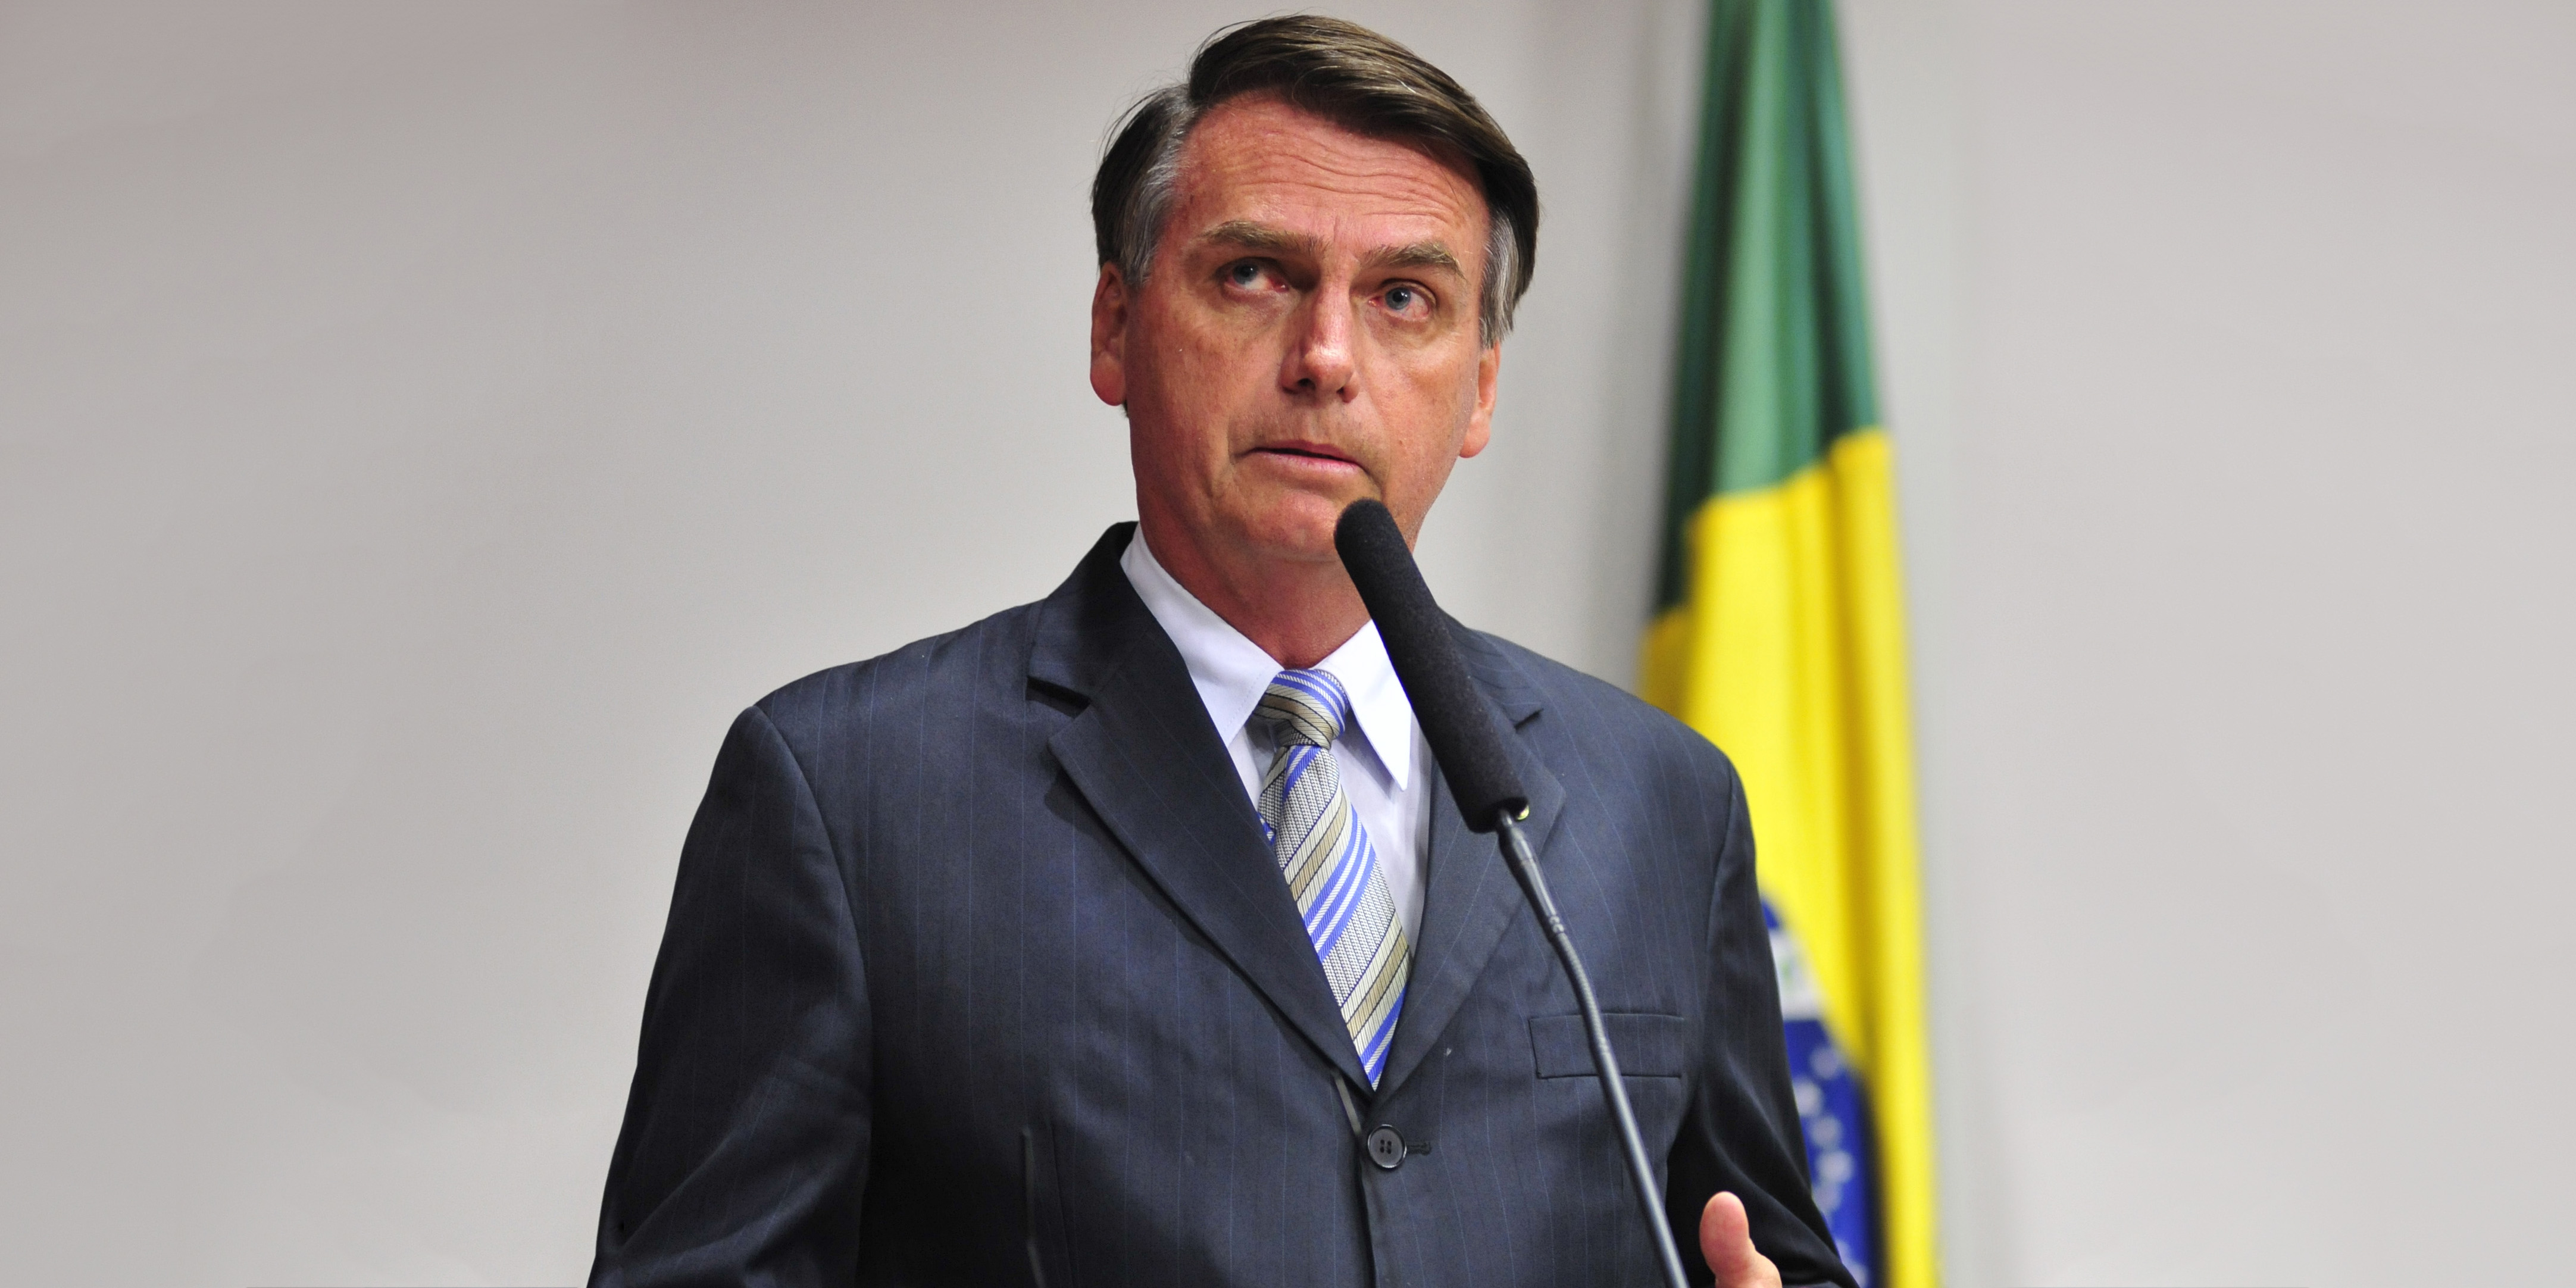 LITIR ÓN mBRASAÍL: Beag is fiú á dhéanamh ag Bolsonaro den choróinvíreas, faitíos ar an bpobal